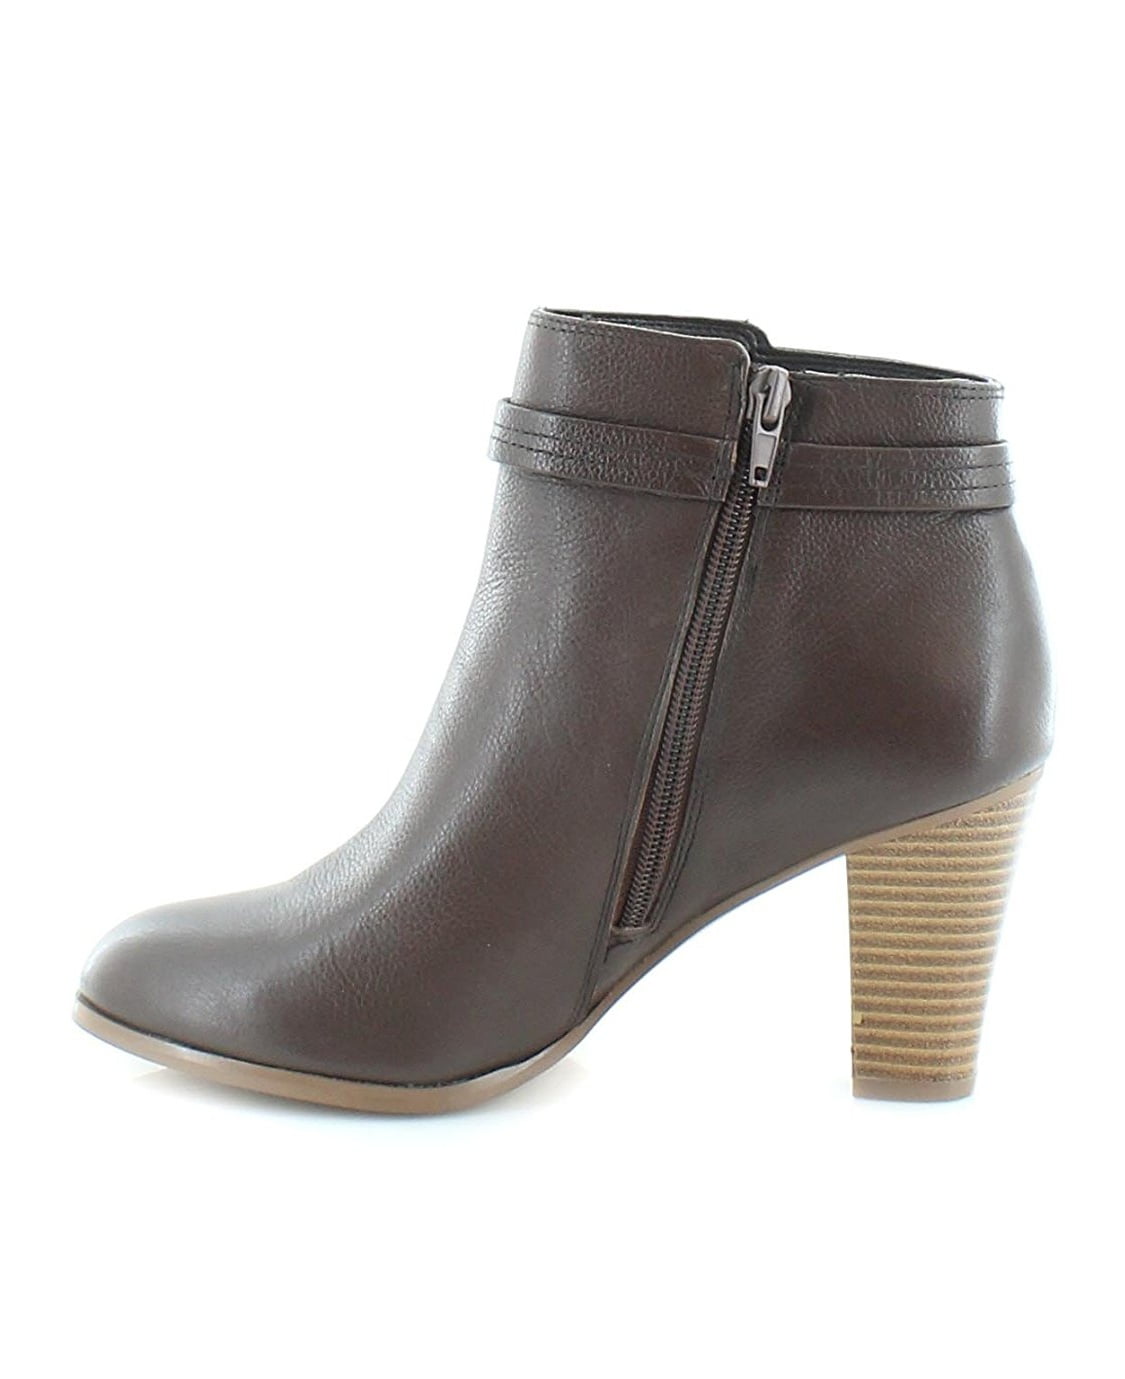 Giani Bernini Womens Baari Leather Closed Toe Ankle Fashion Boots ...